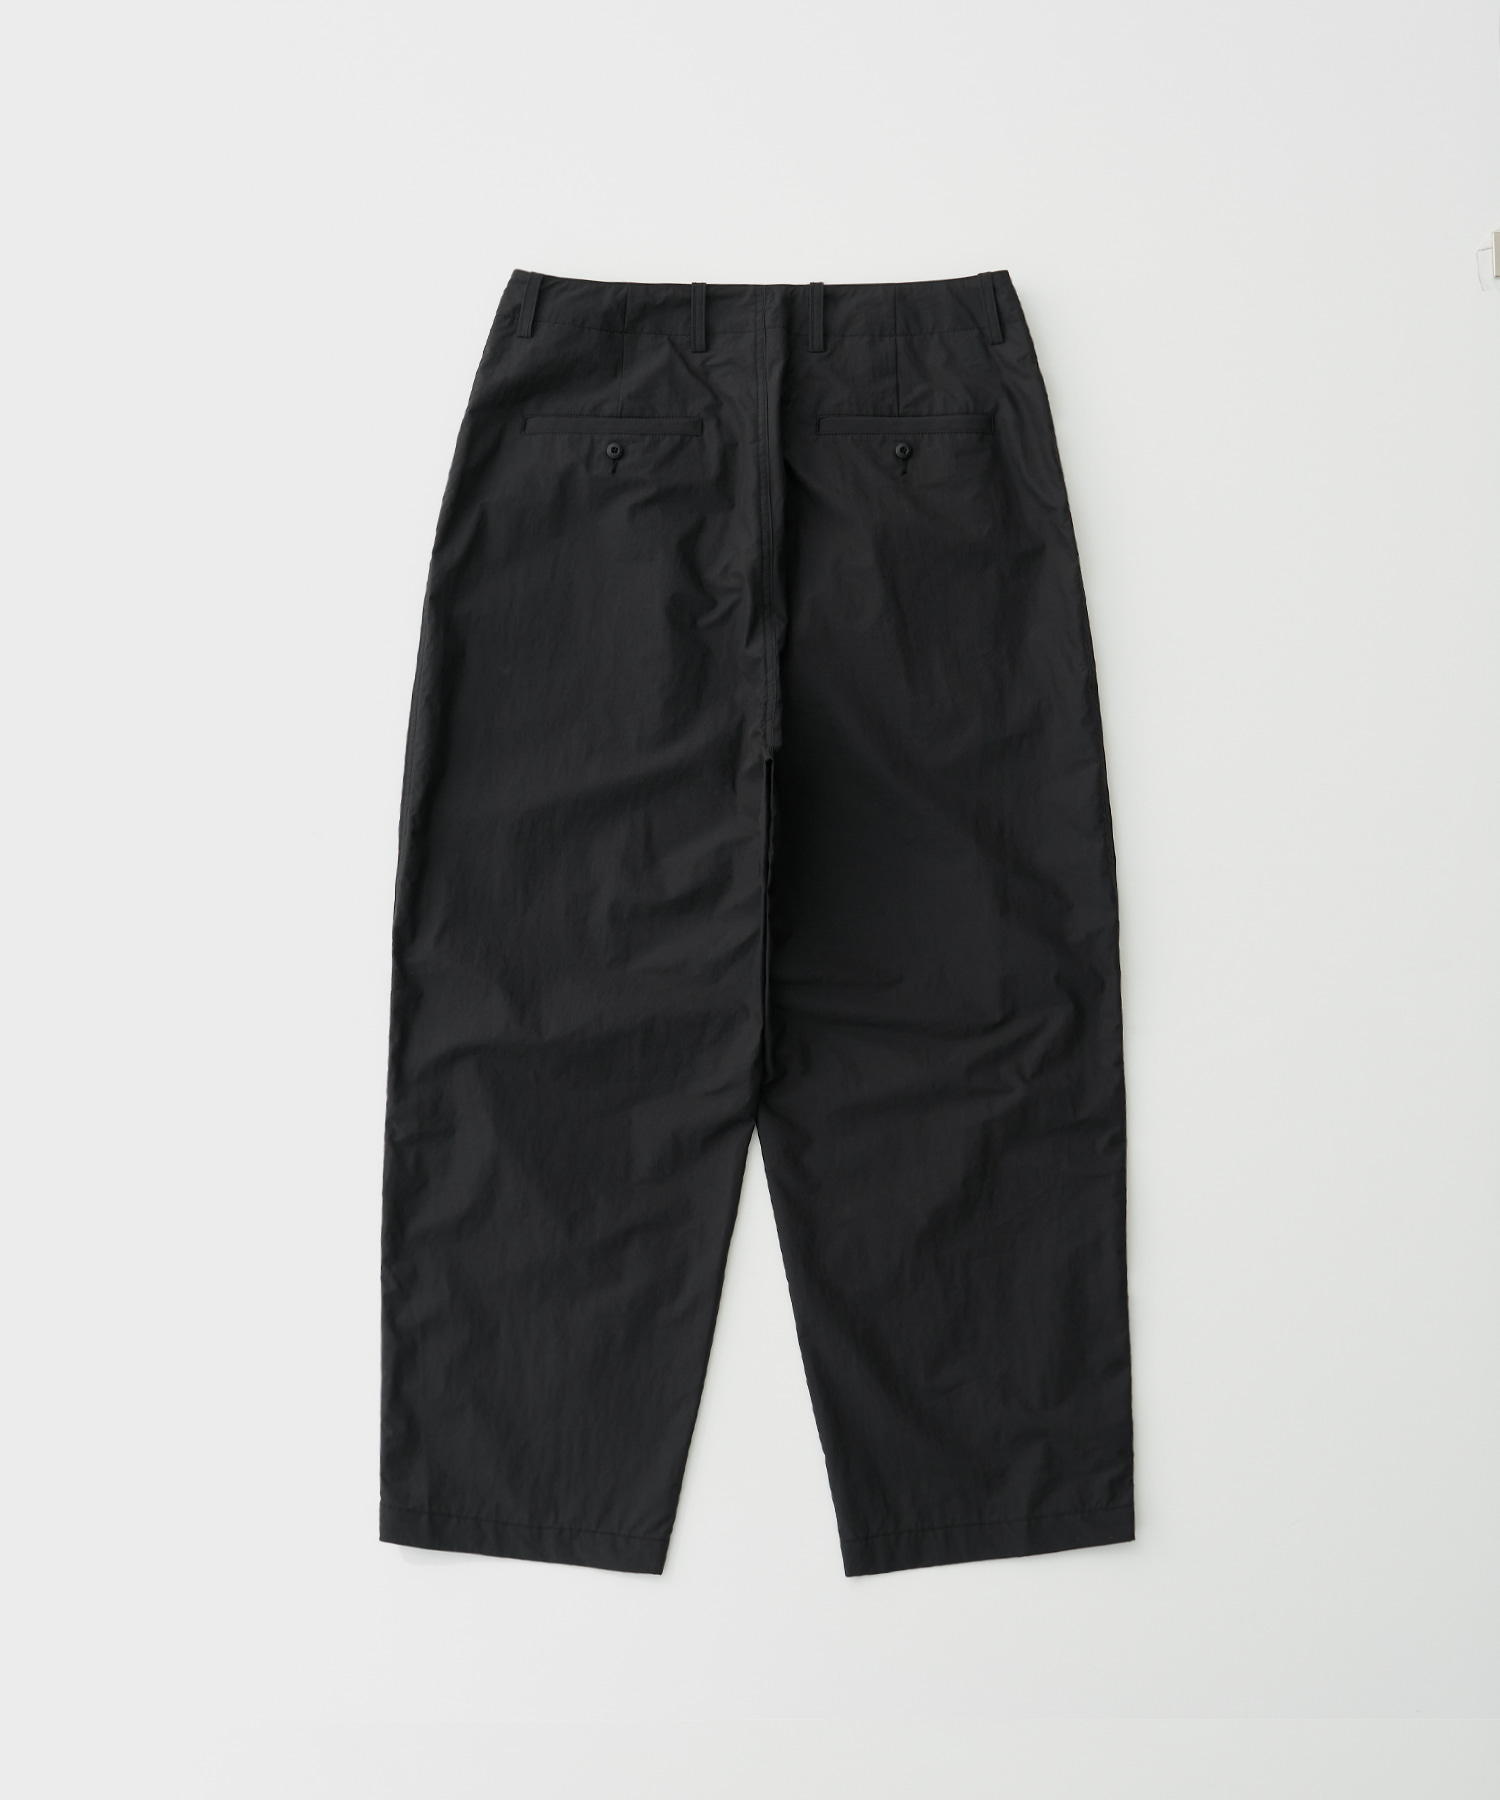 Fatigue Pants (Black)